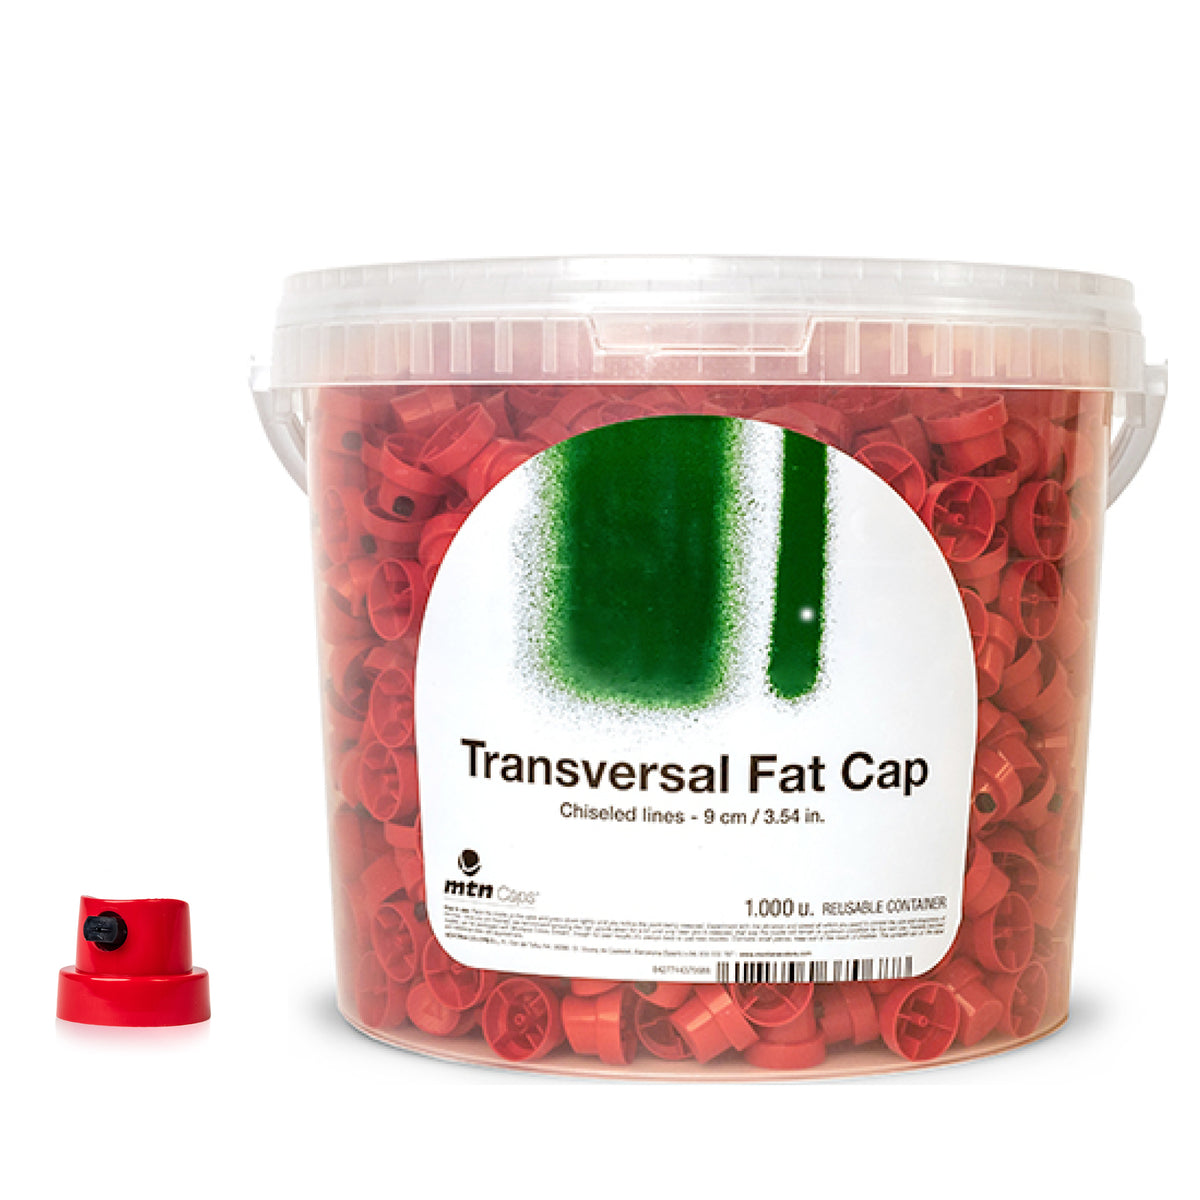 Transversal Fat Cap